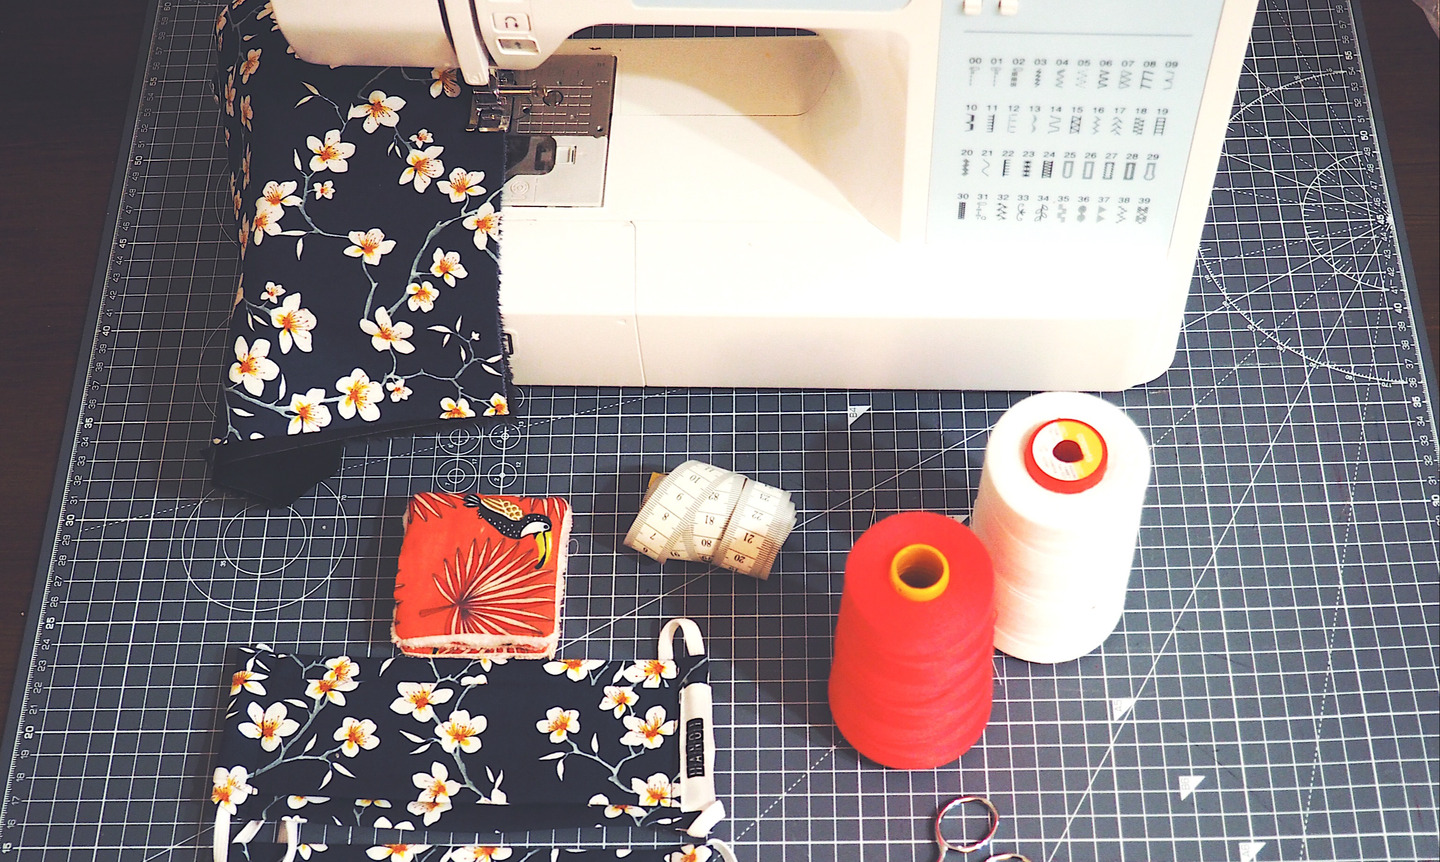 Viens apprendre à coudre ton accesoire en tissu dans notre atelier ! 